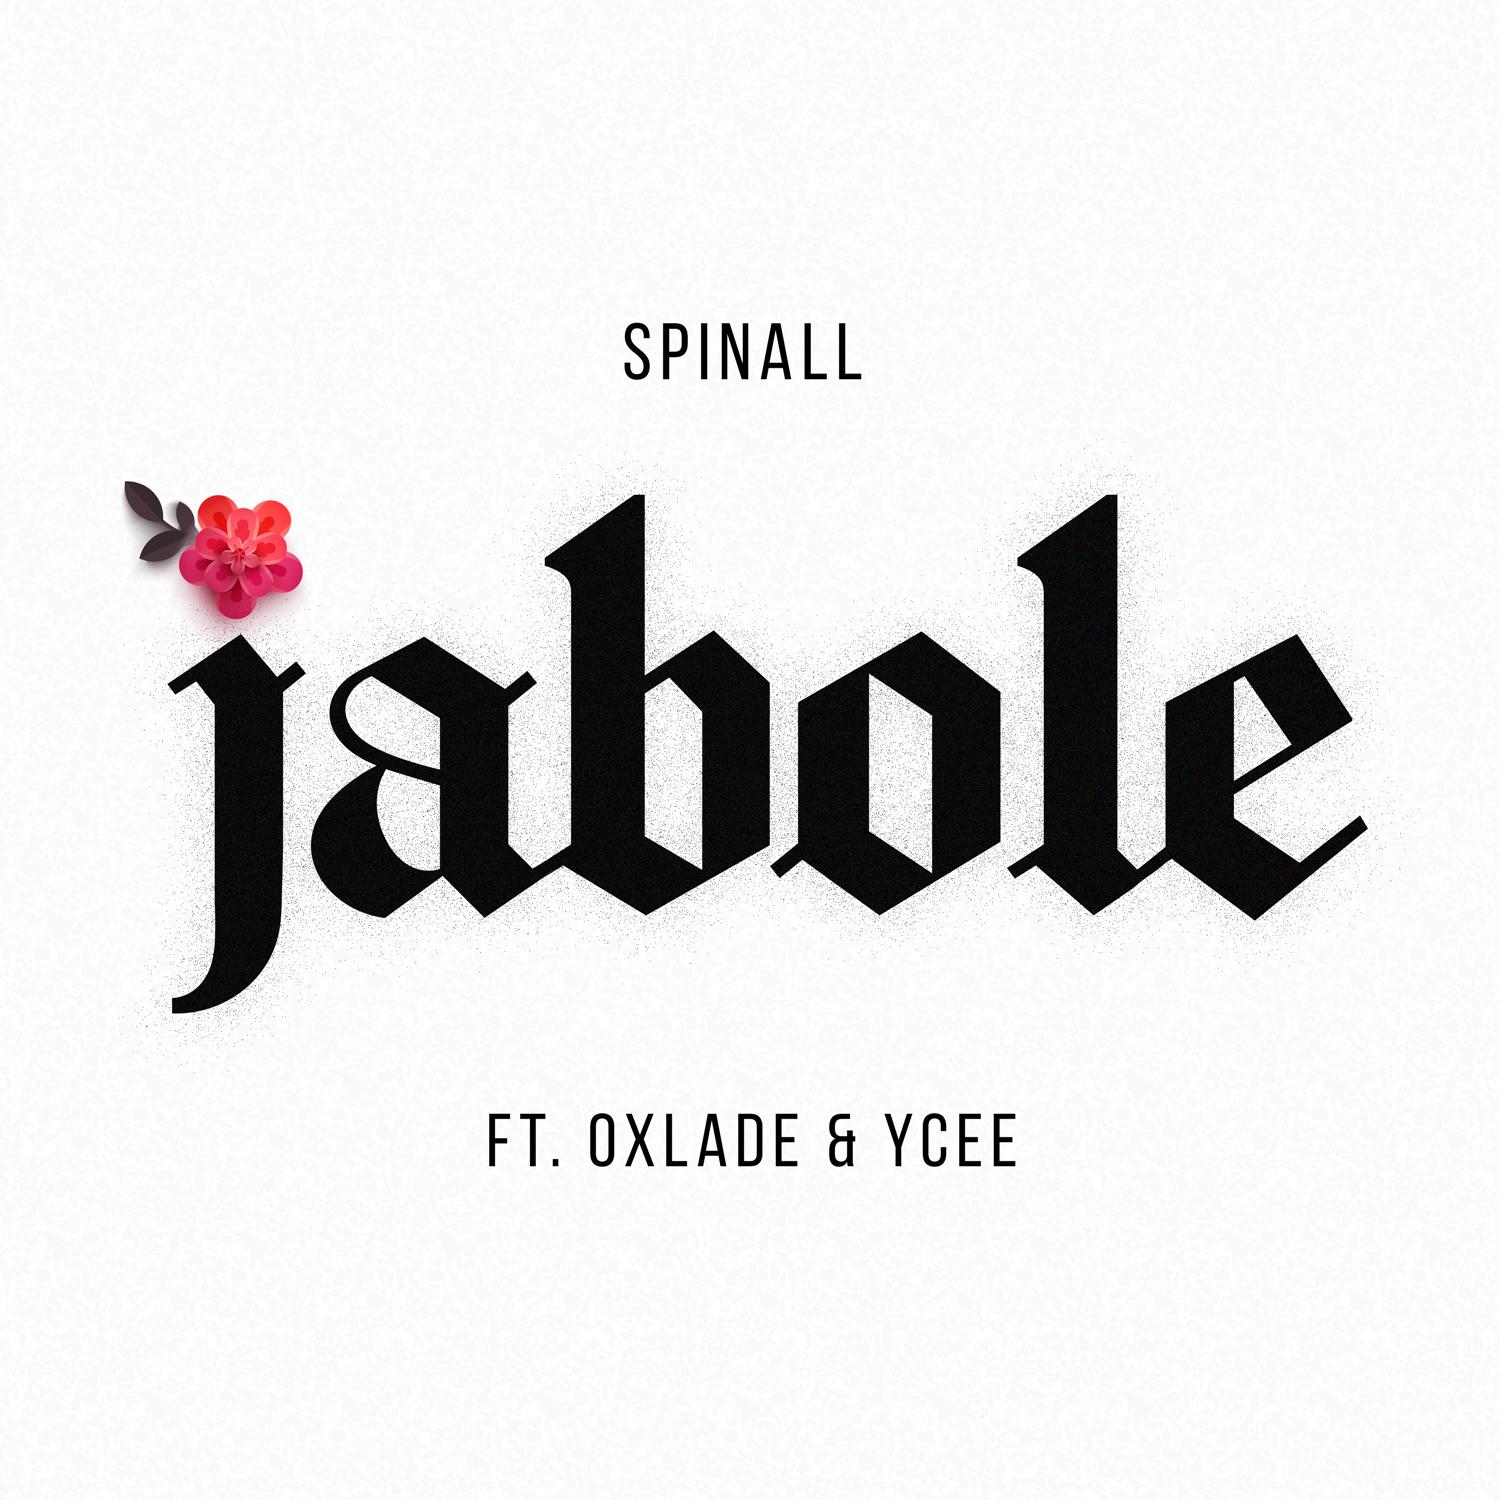 Spinall - Jabole